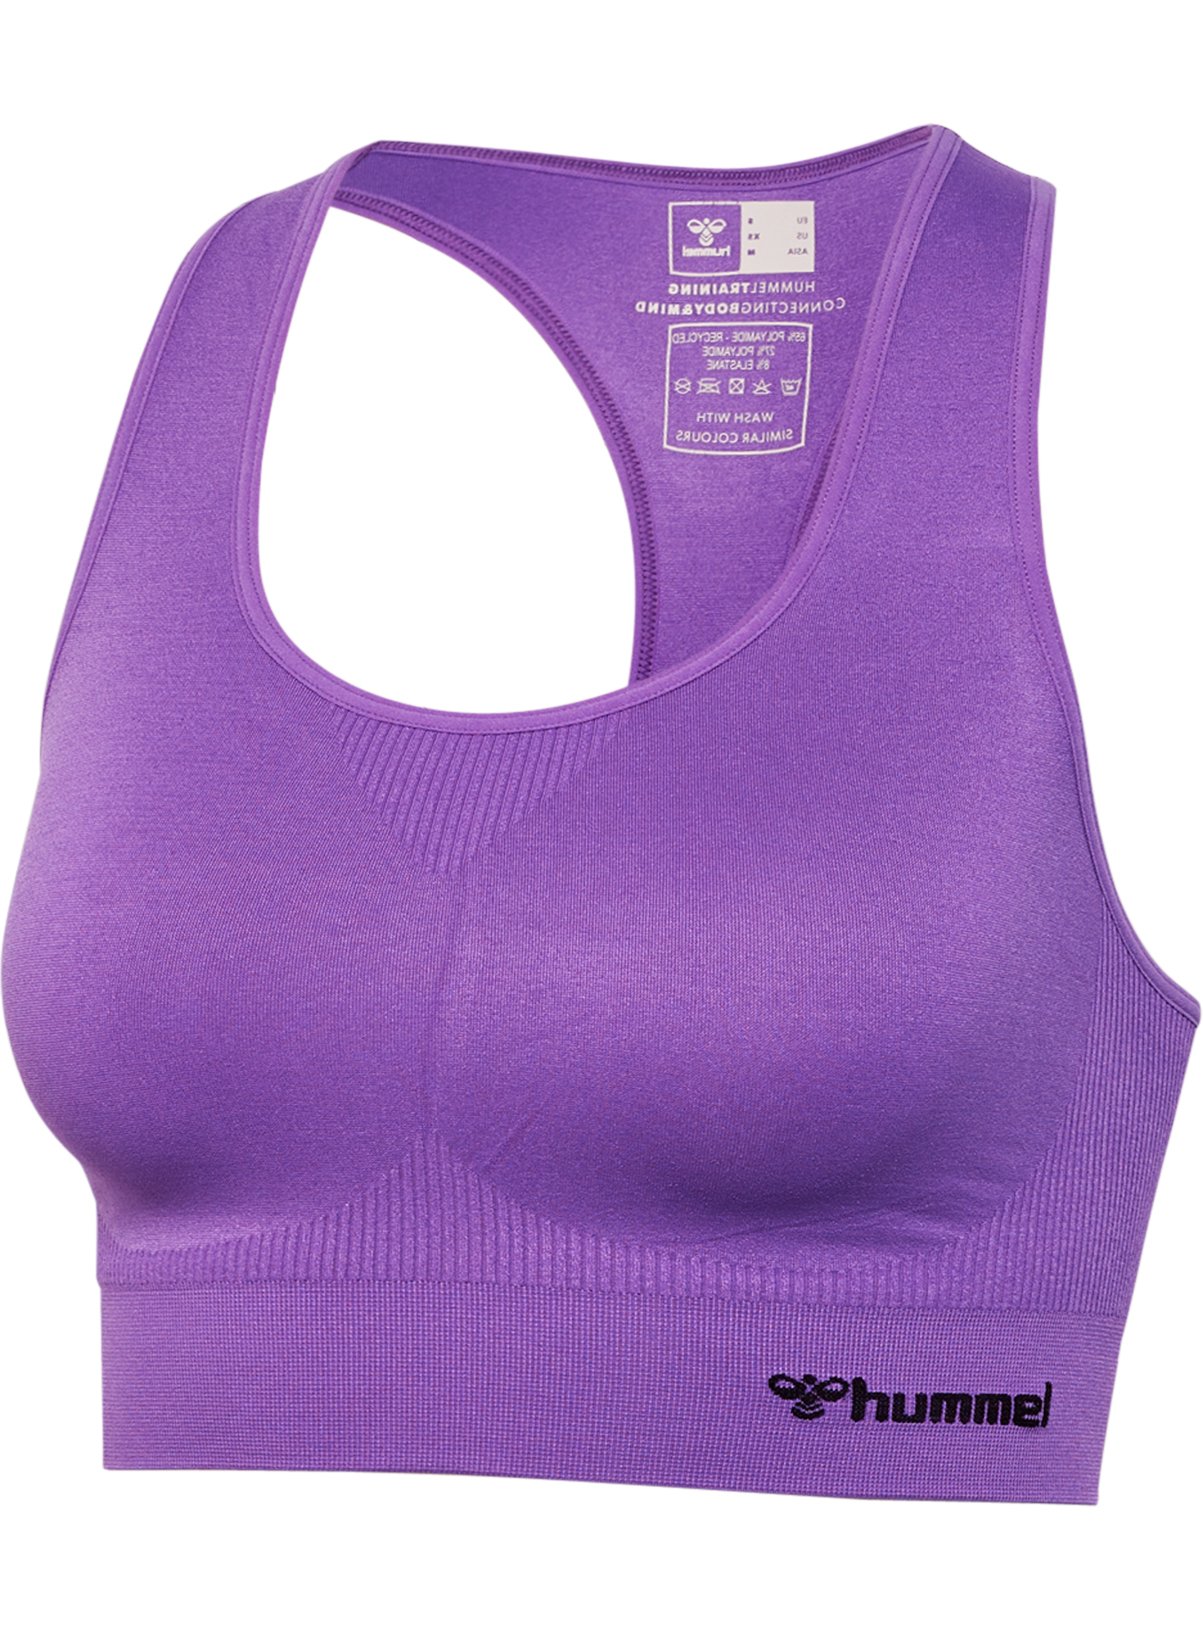 Hummel HUMMEL Tif Seamless Sports Top Purple XS Xs female